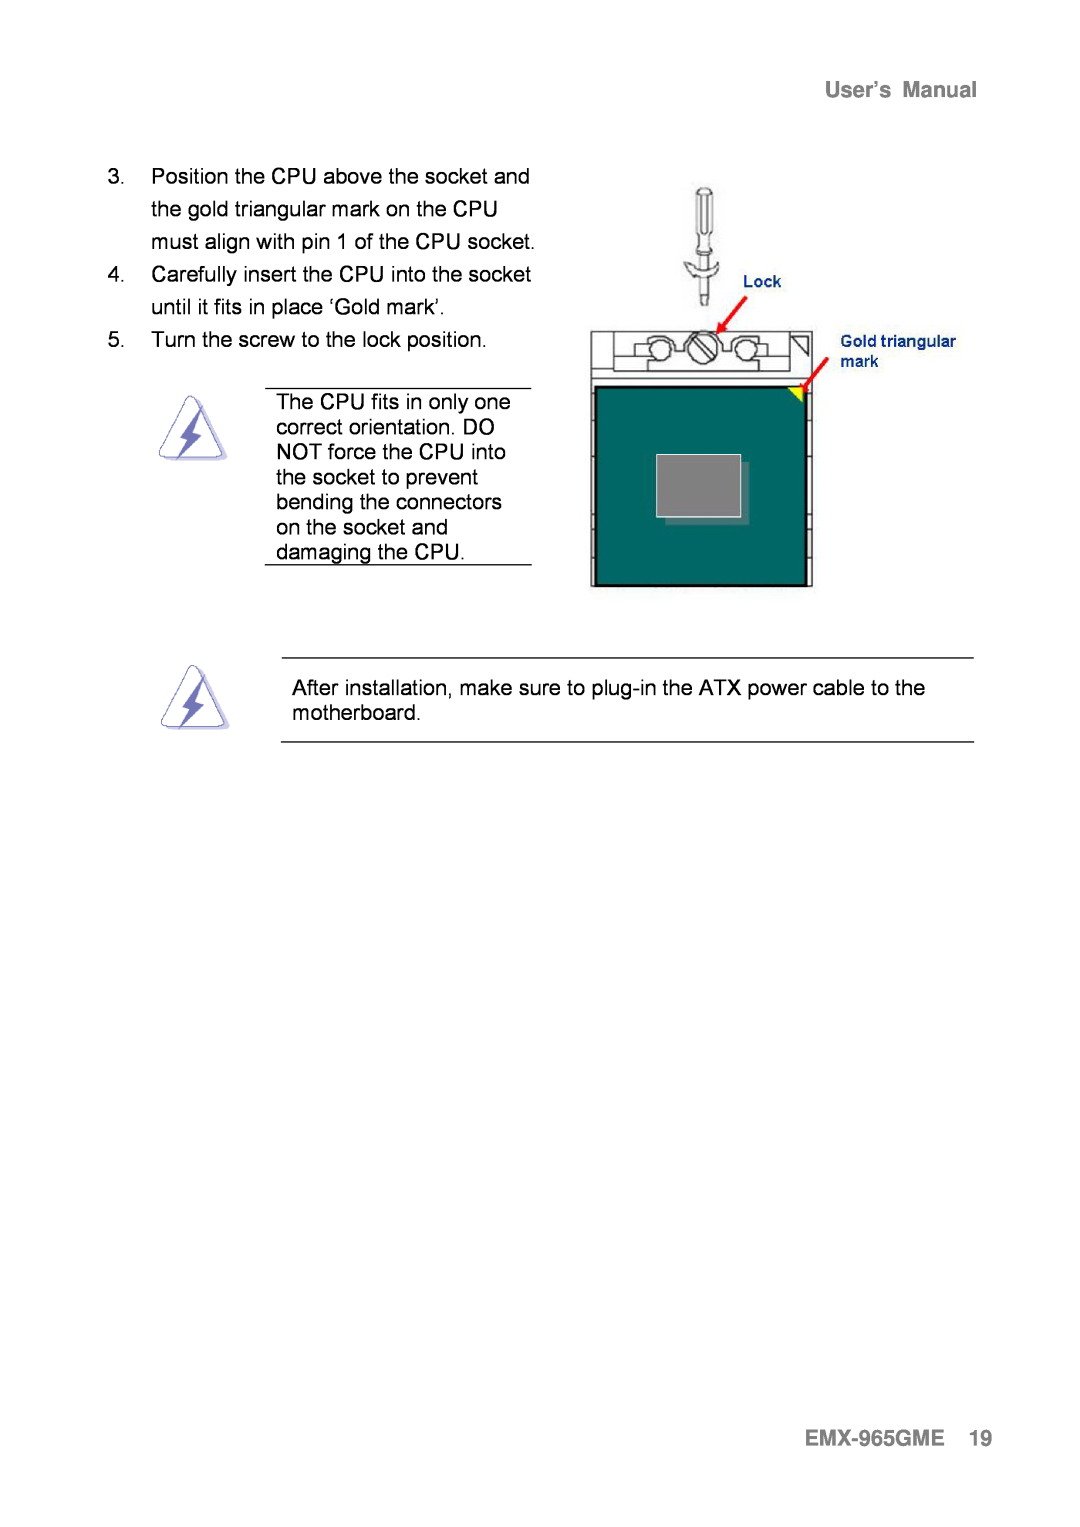 Intel user manual EMX-965GME19, User’s Manual 